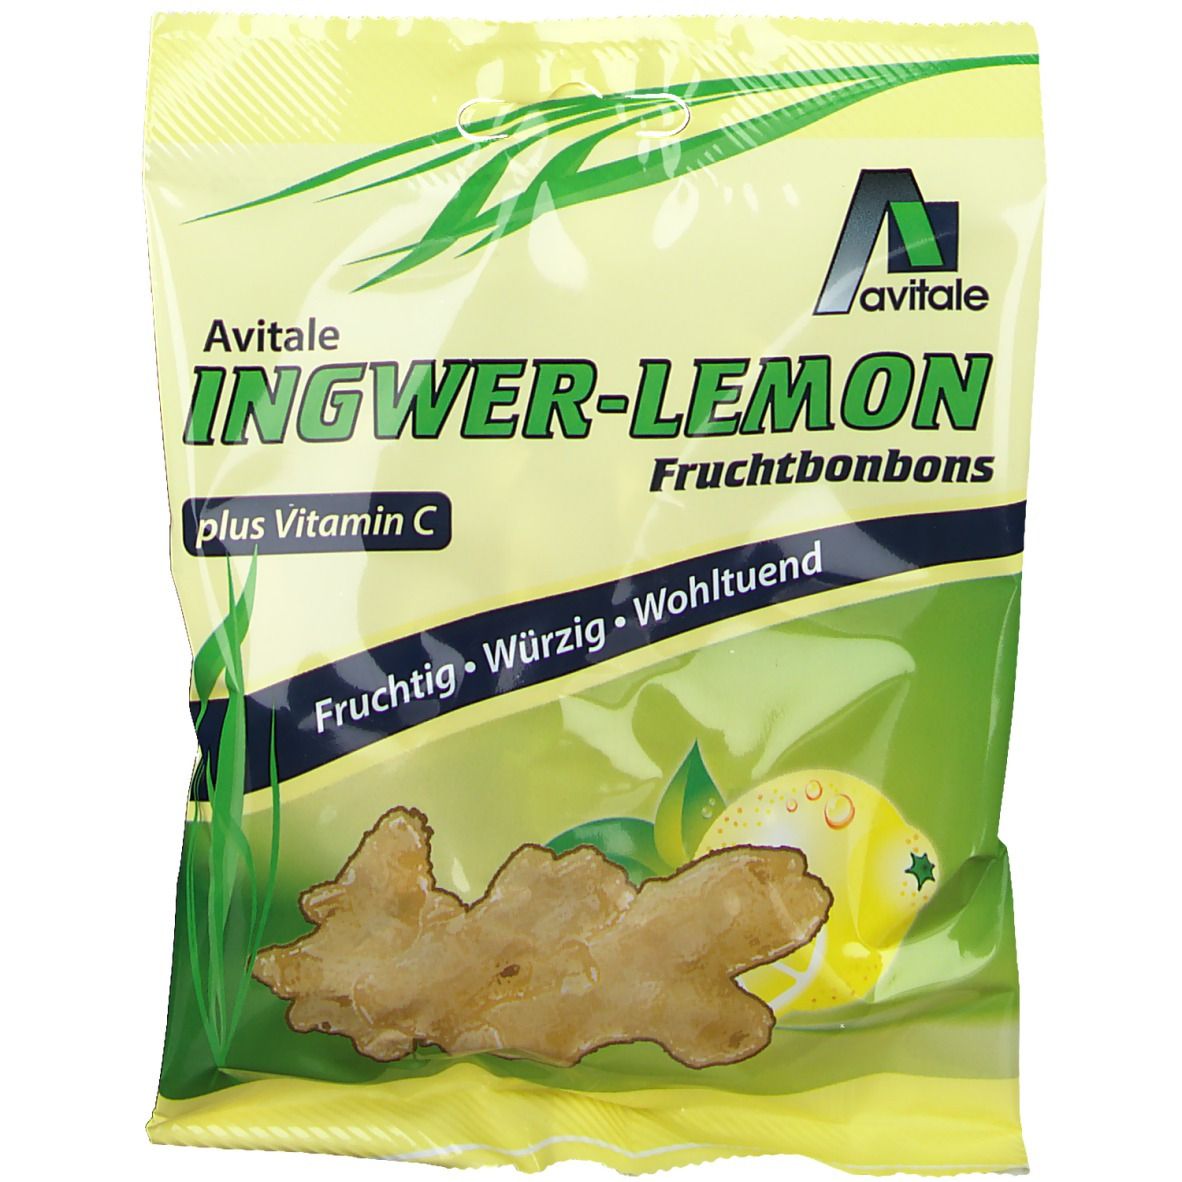 Image of Avitale Ingwer-Lemon Fruchtbonbons